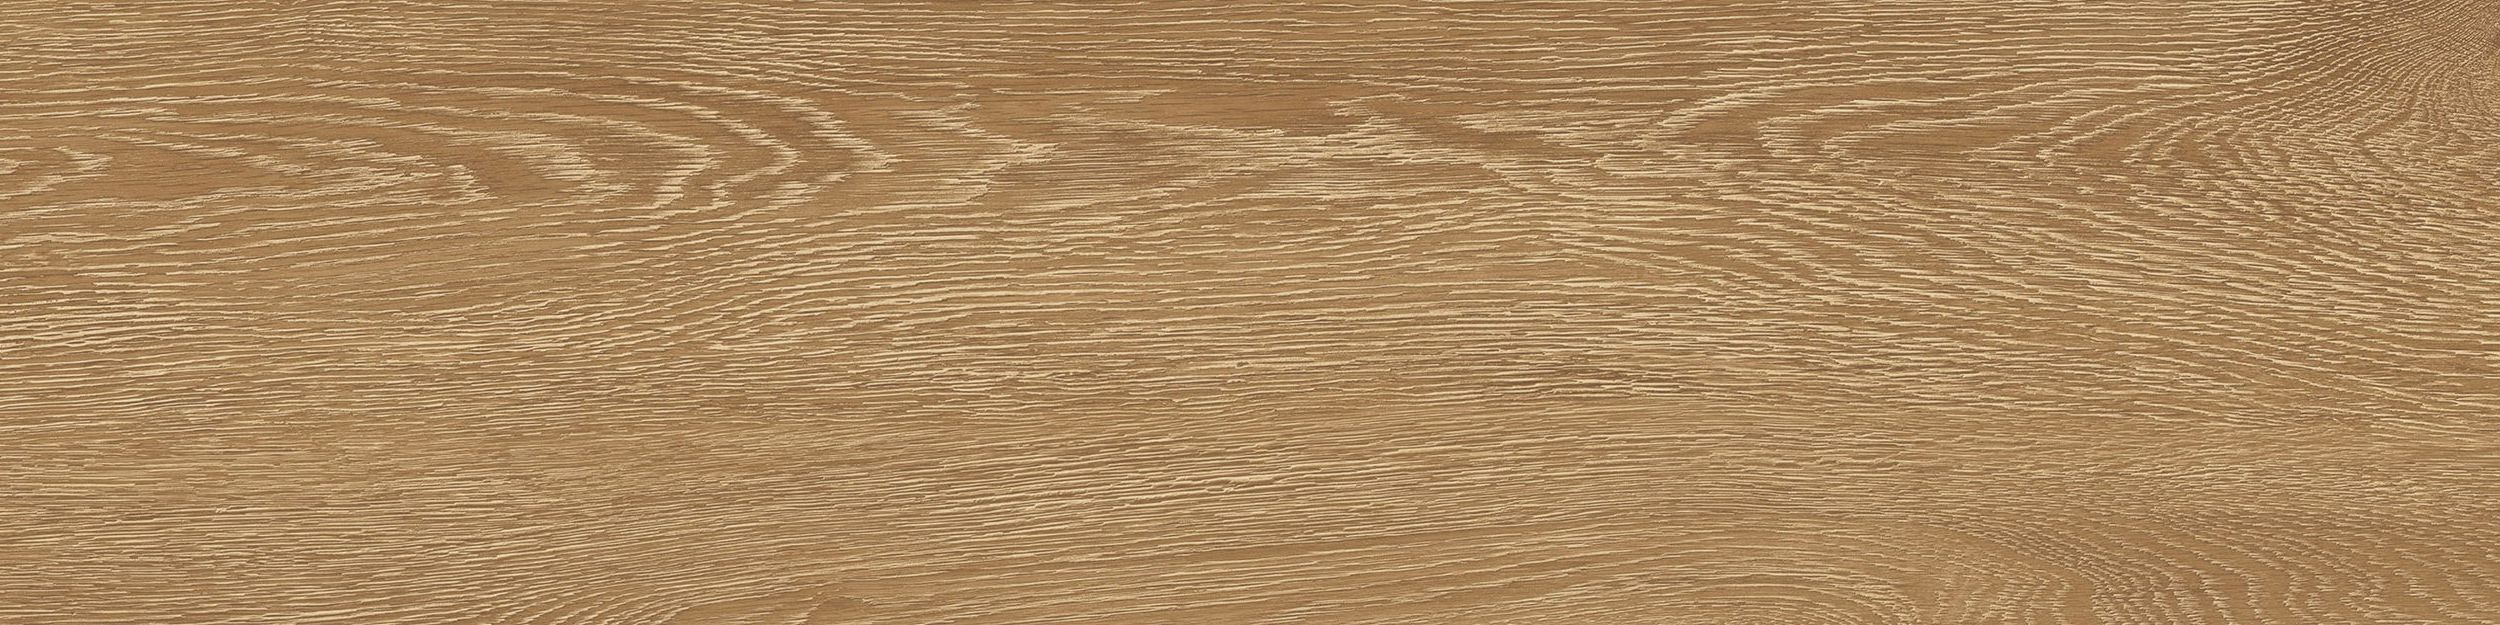 Textured Woodgrains LVT In Antique Oak image number 3